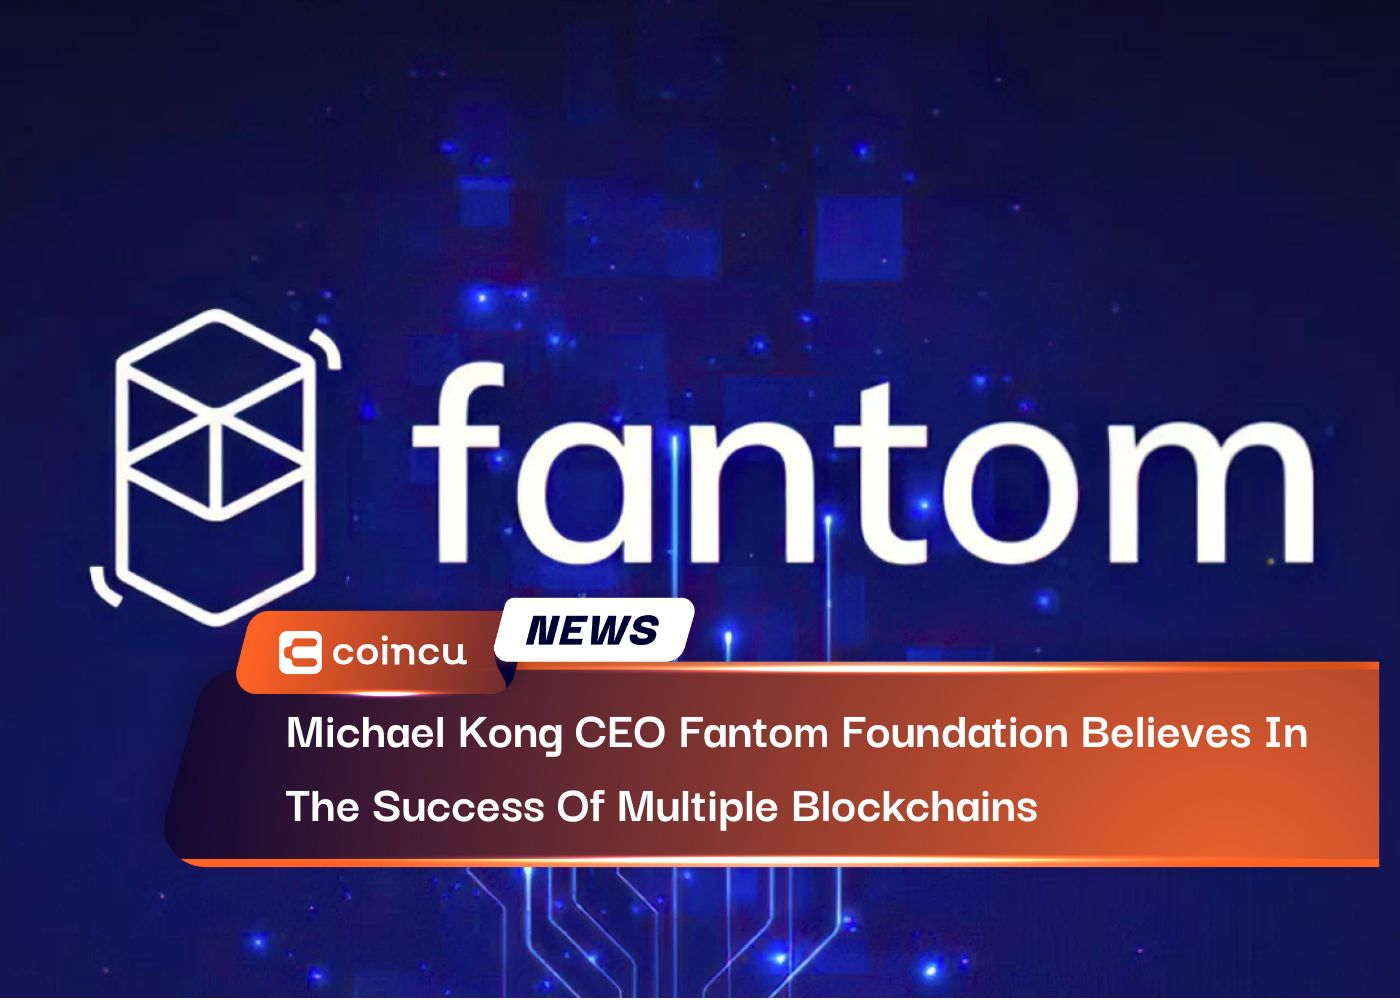 Le PDG de Michael Kong, Fantom Foundation, croit au succès de plusieurs blockchains